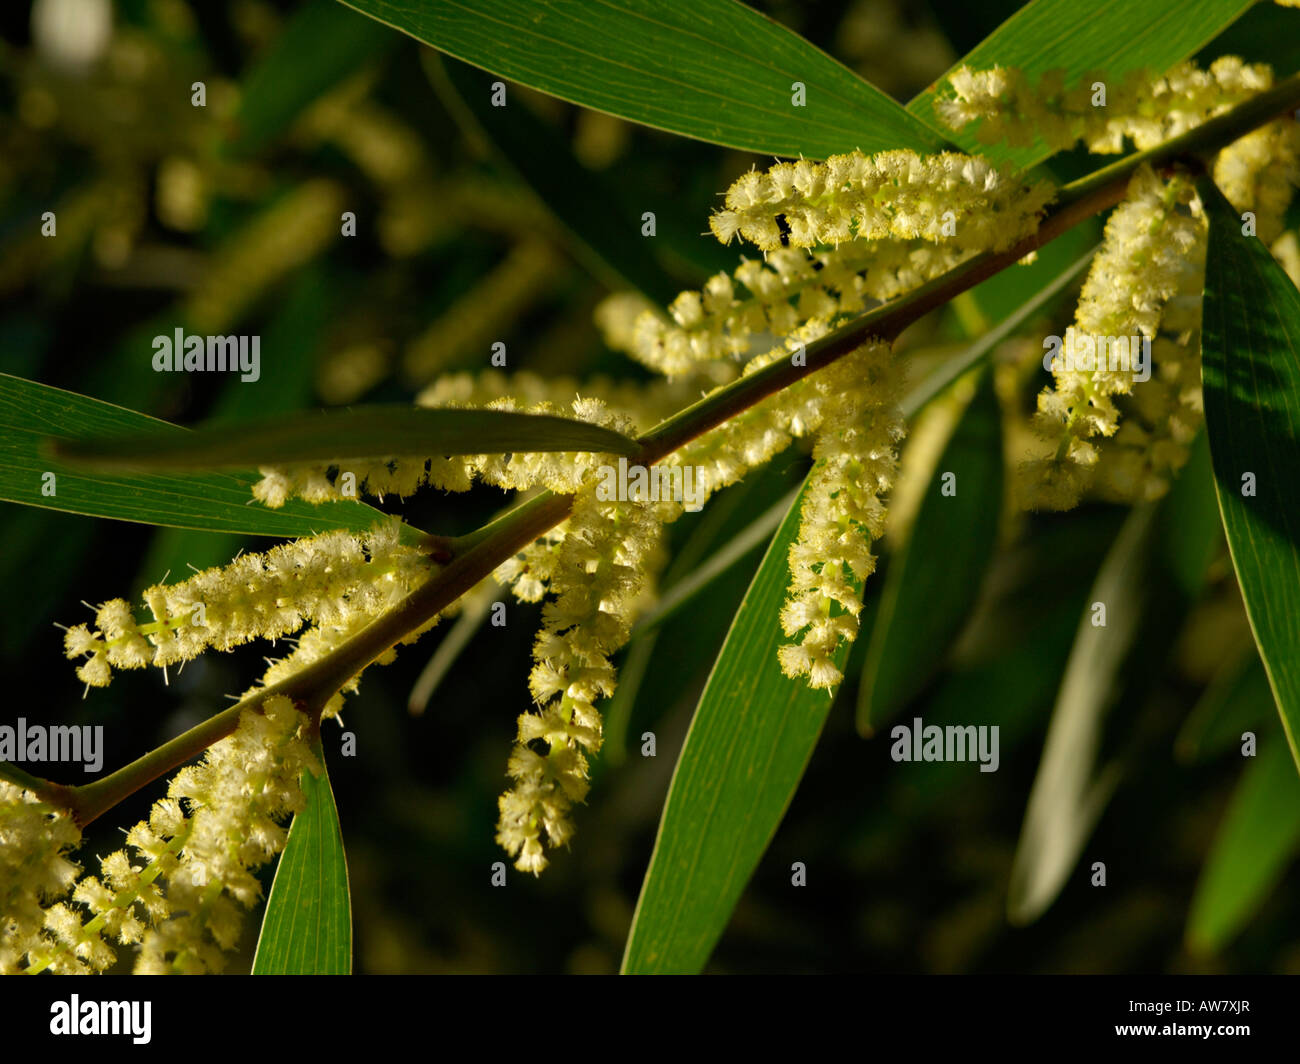 Golden wattle (Acacia longifolia) Stock Photo